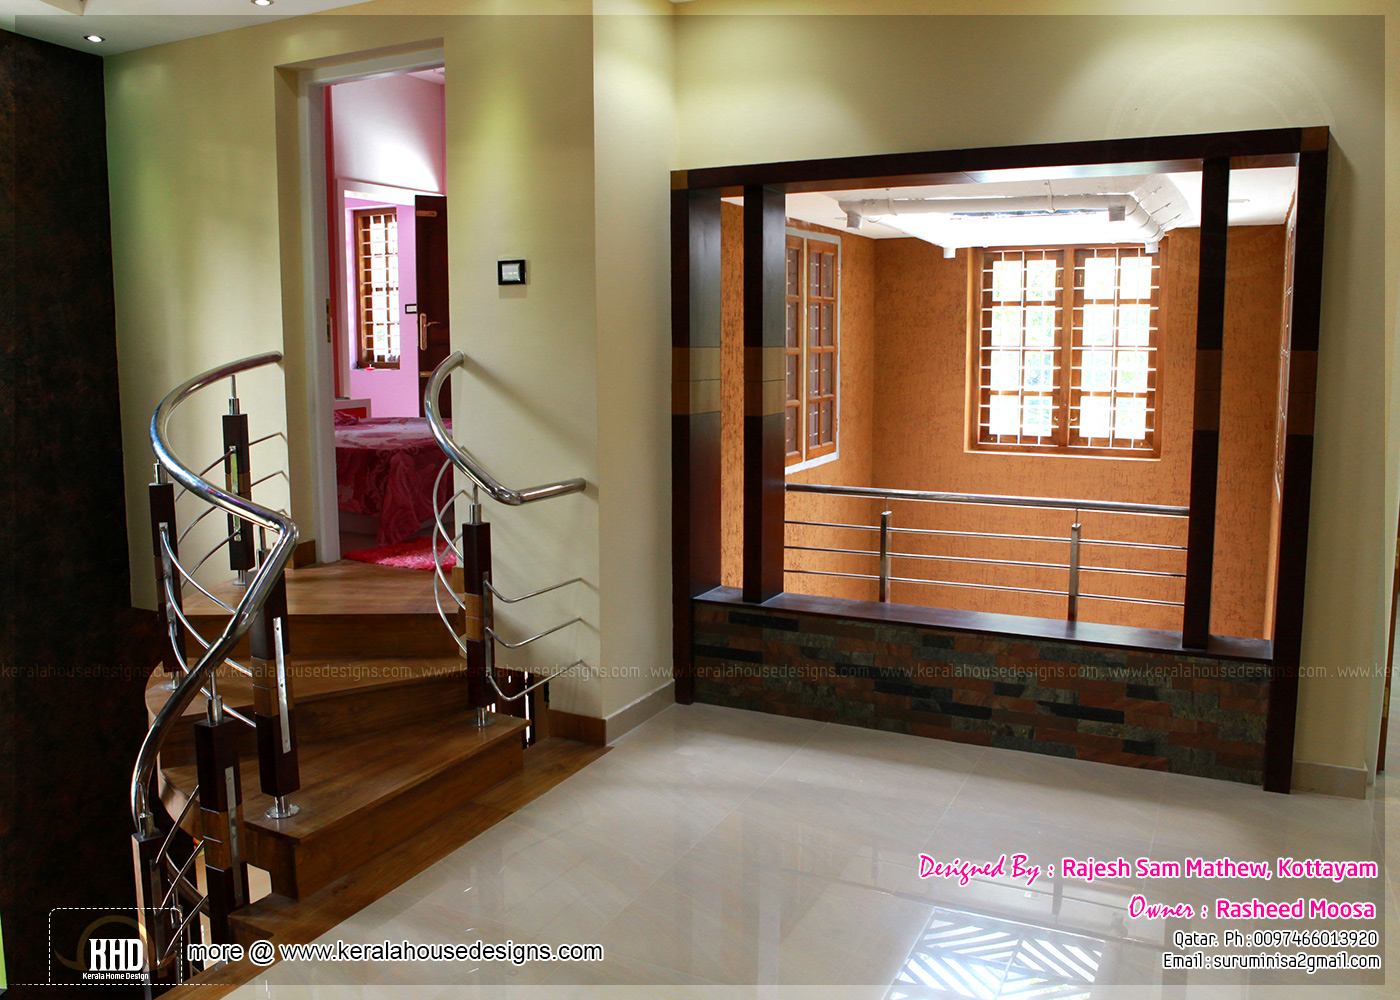  Kerala  interior design  with photos Kerala  home  design  